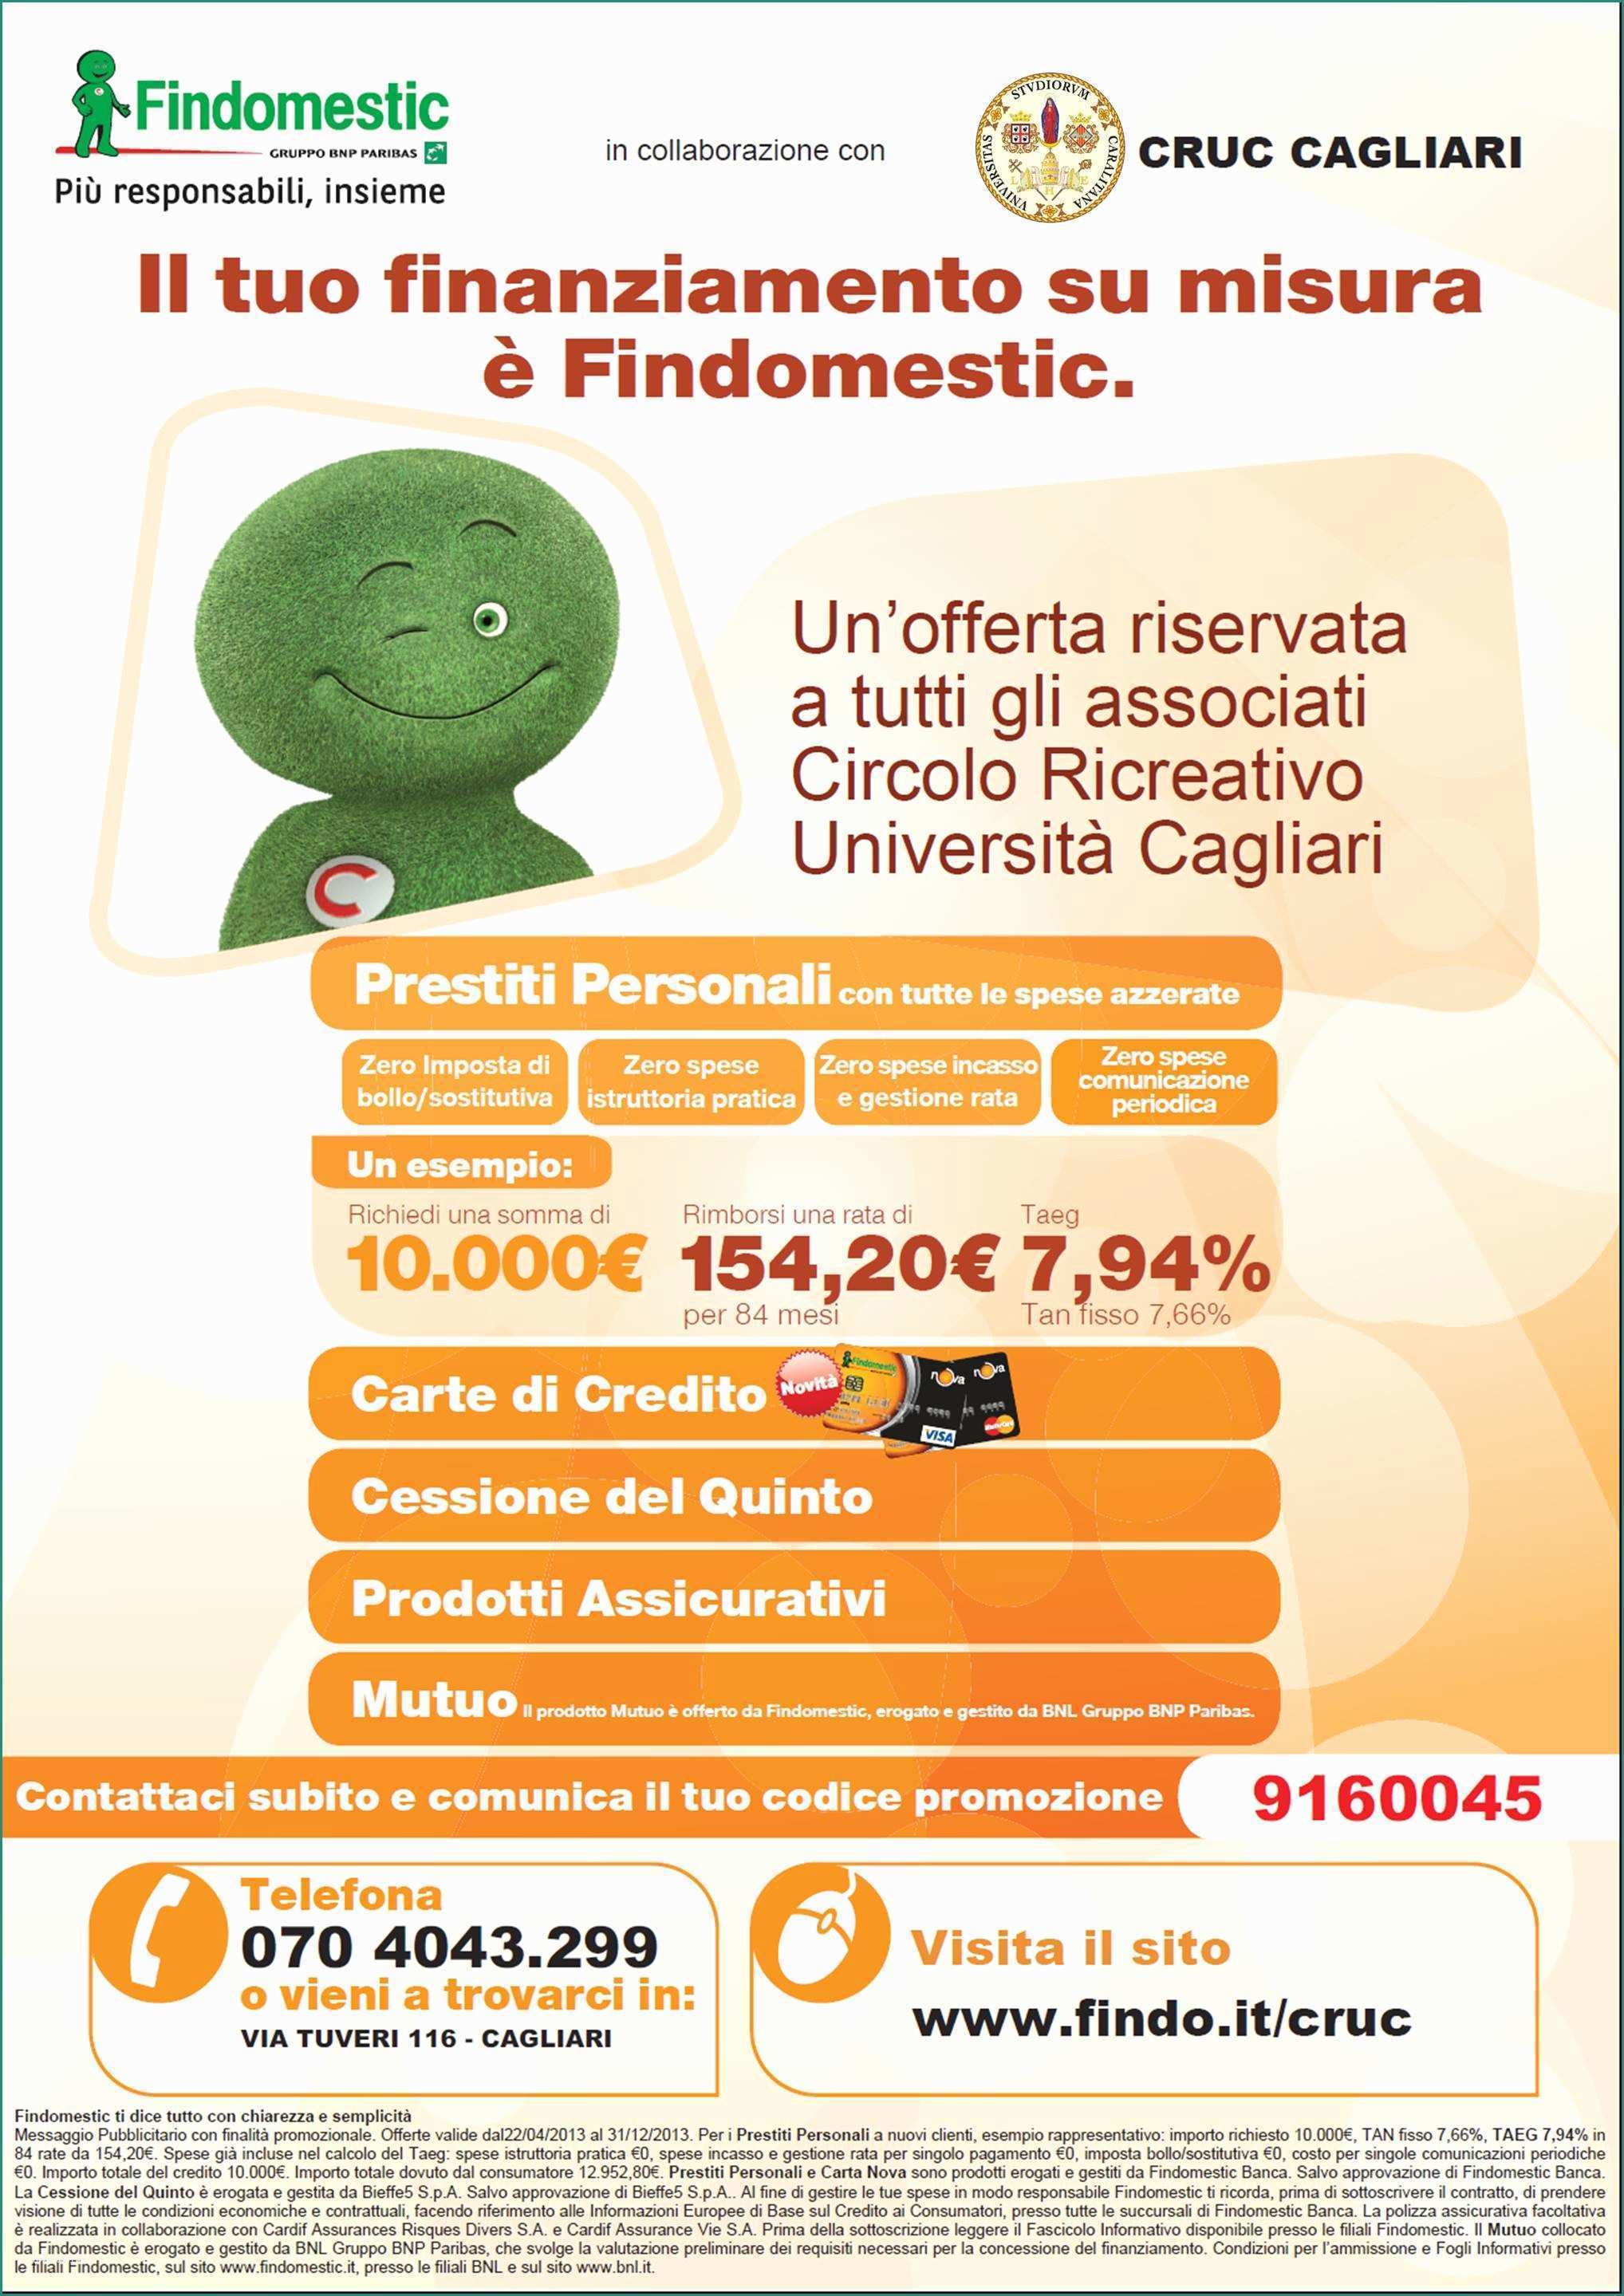 Prestiti Personali Findomestic Calcola Rata E Findomestic assistenza Clienti